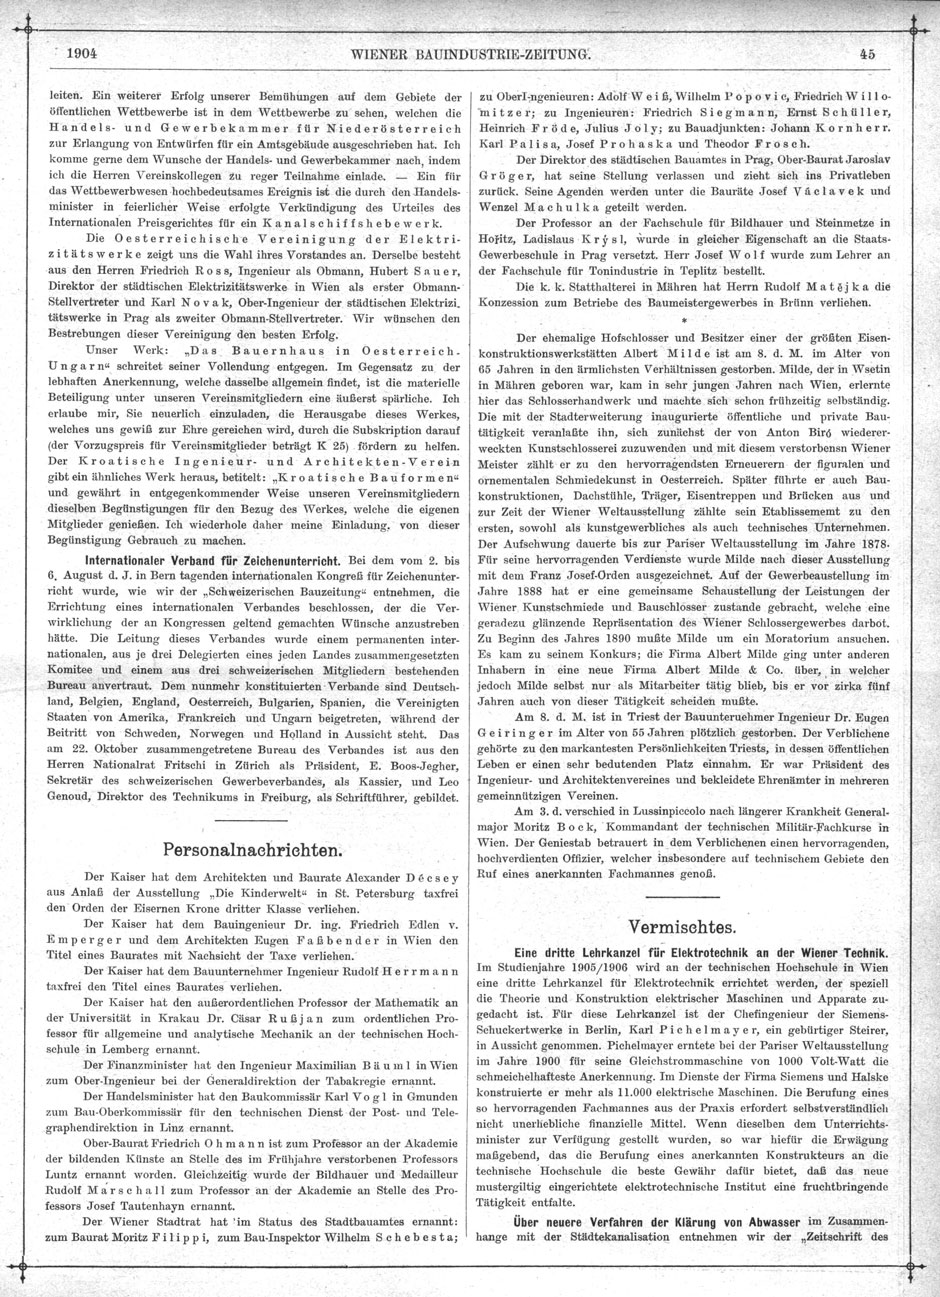 Wiener Bauindustrie-Zeitung 1904-95, Seite 45